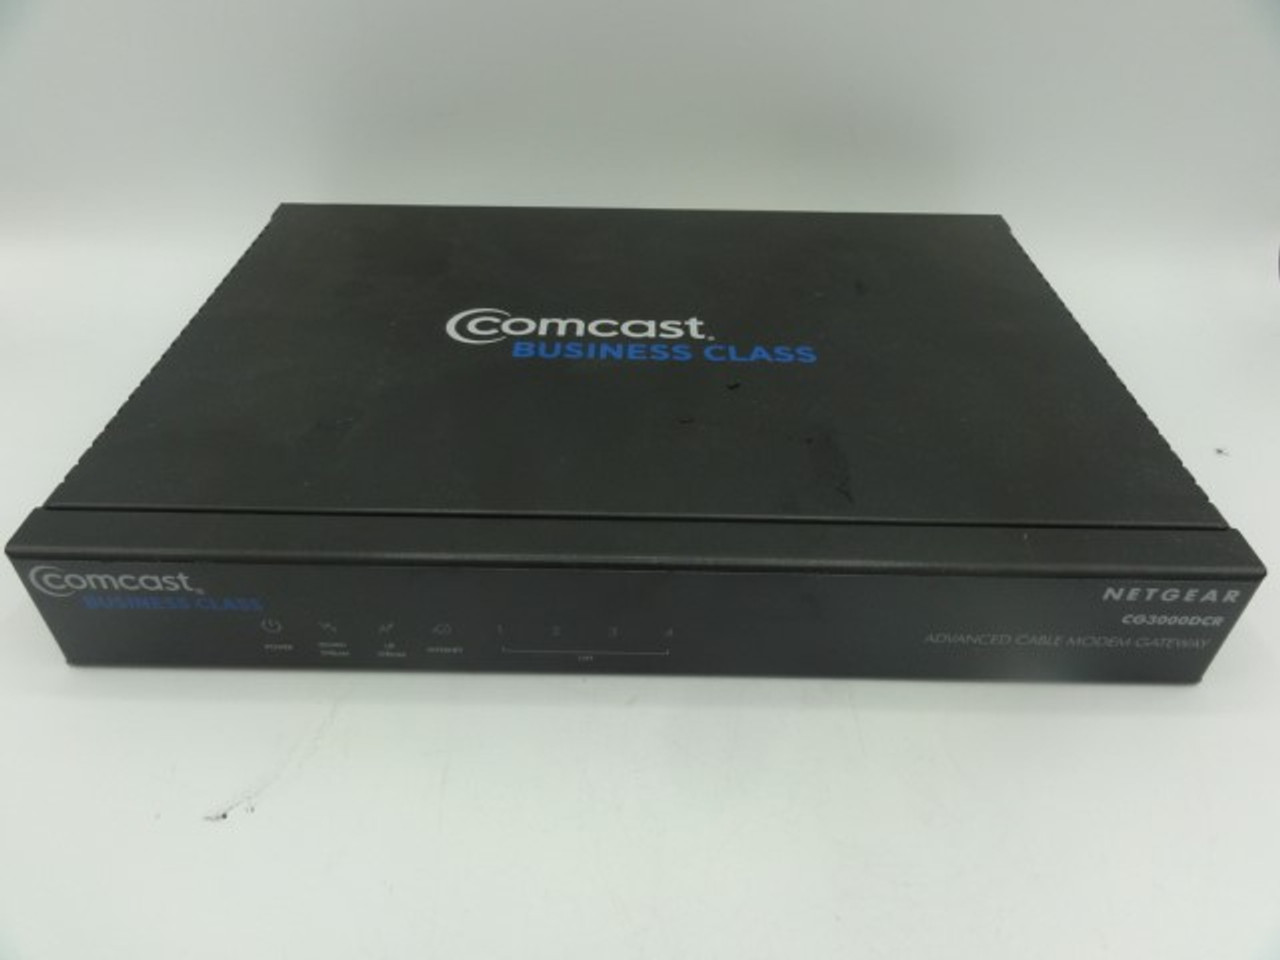 Comcast Business Class CG3000DCR Advanced Cable Modem Gateway